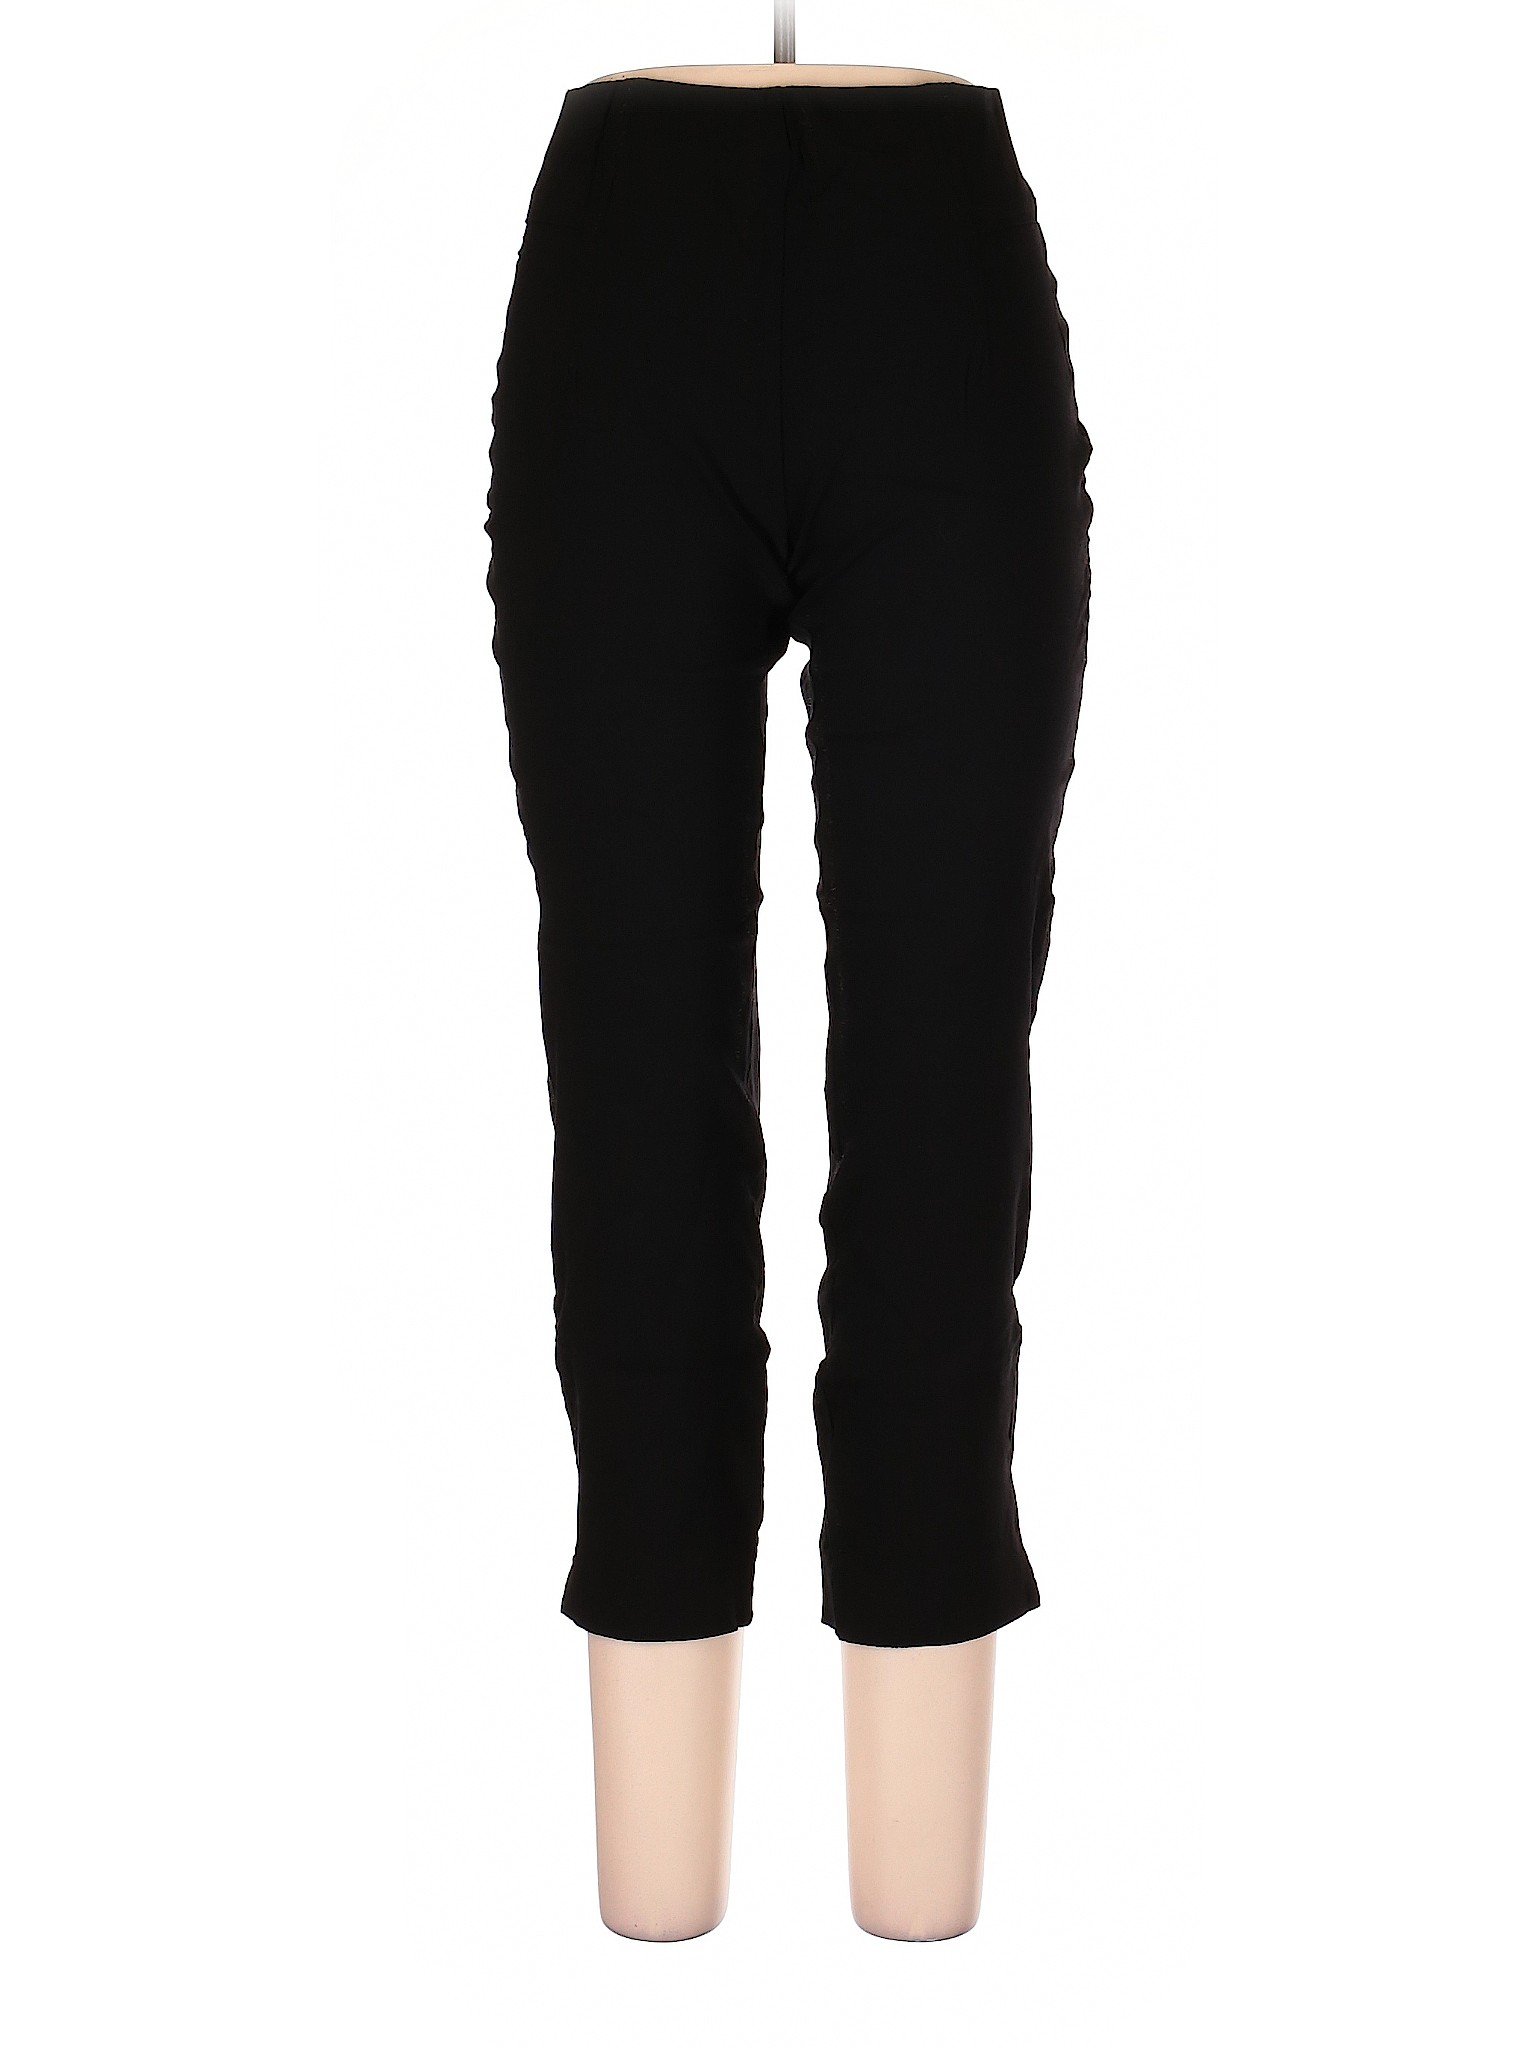 NYCC Women Black Dress Pants 10 | eBay